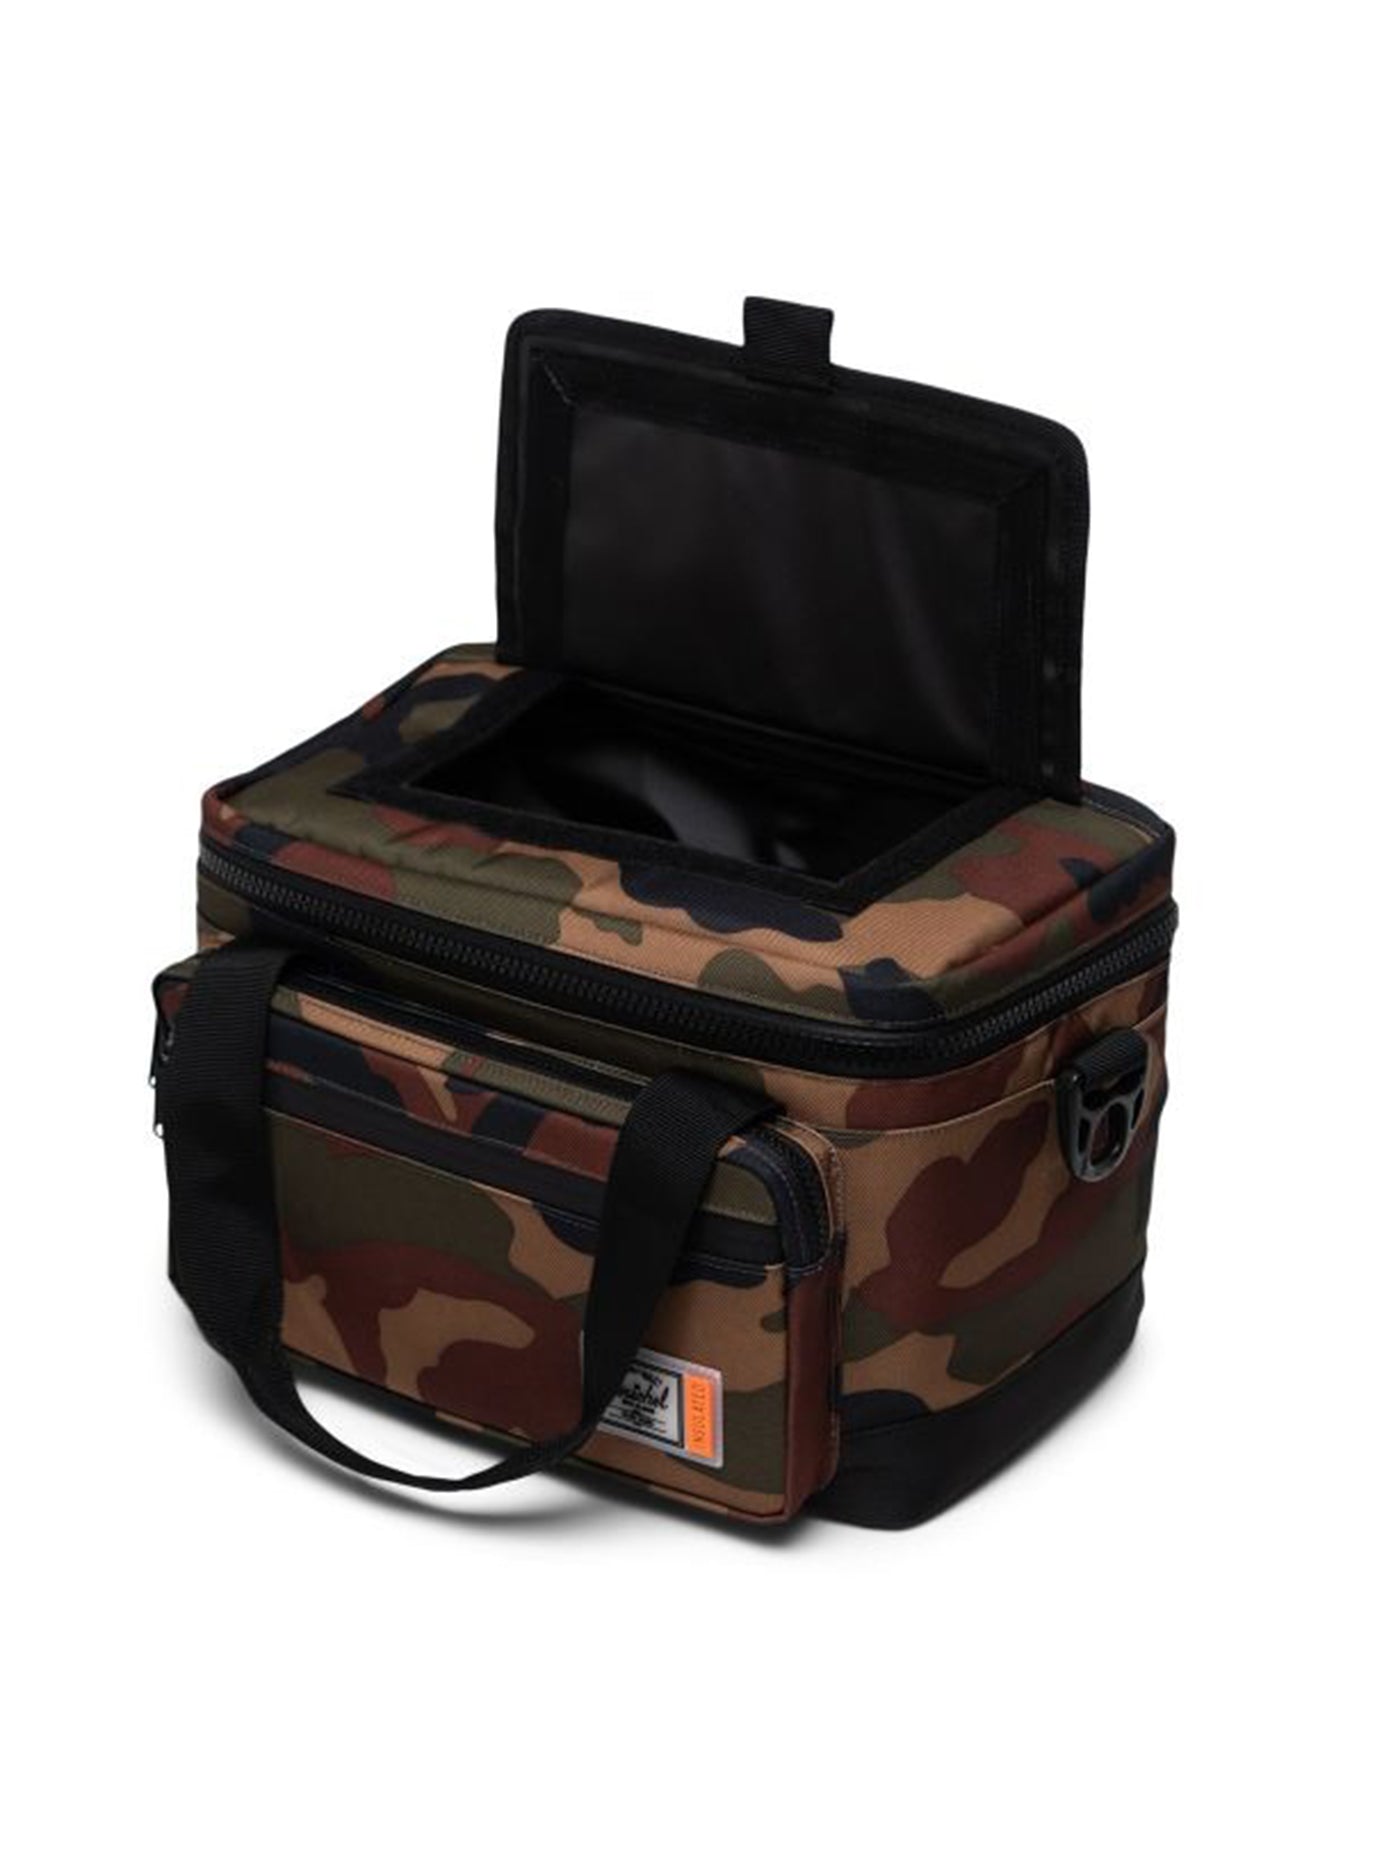 Herschel Pop Quiz Cooler 12 Pack Insulated Bag